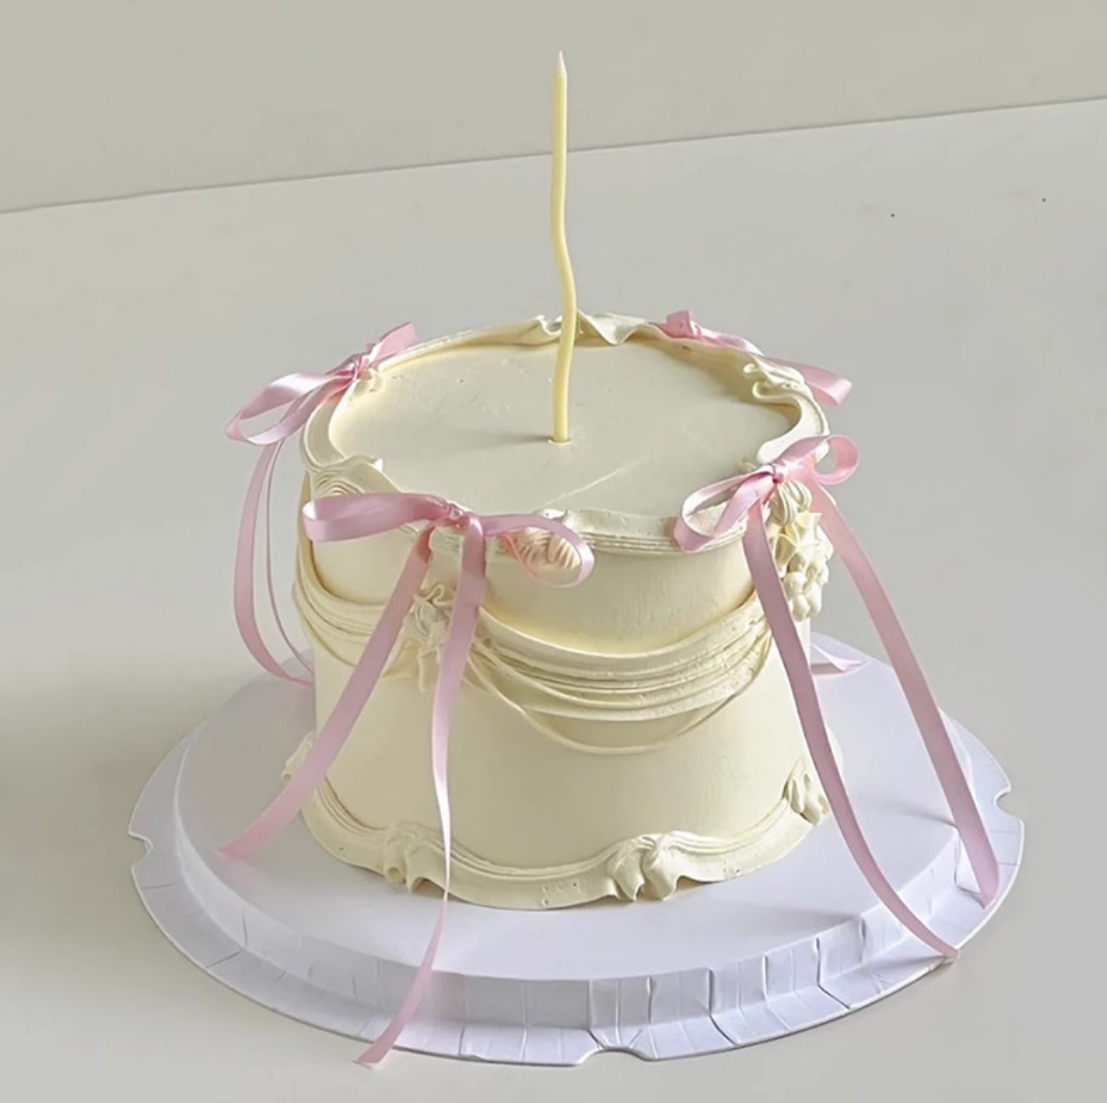 简约仙女蝴蝶结生日蛋糕装饰丝带芭蕾风少女心派对甜品台装扮插件 - 图1